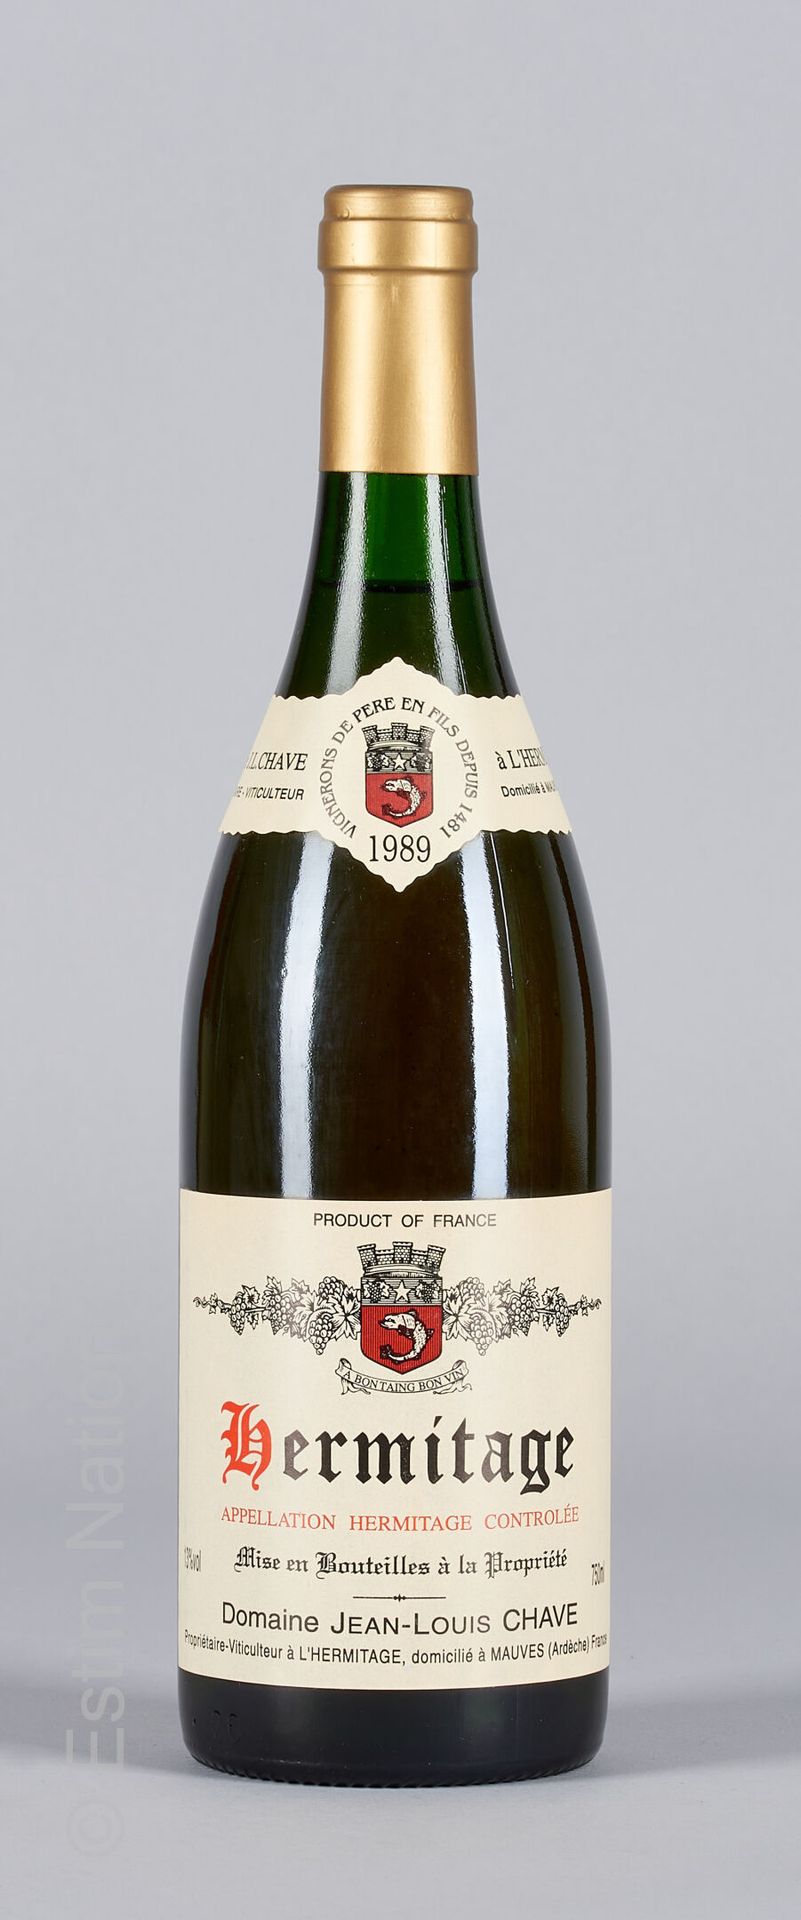 HERMITAGE BLANC 1 bottle HERMITAGE 1989 Jean-Louis Chave (white)

(N. Between 2,&hellip;